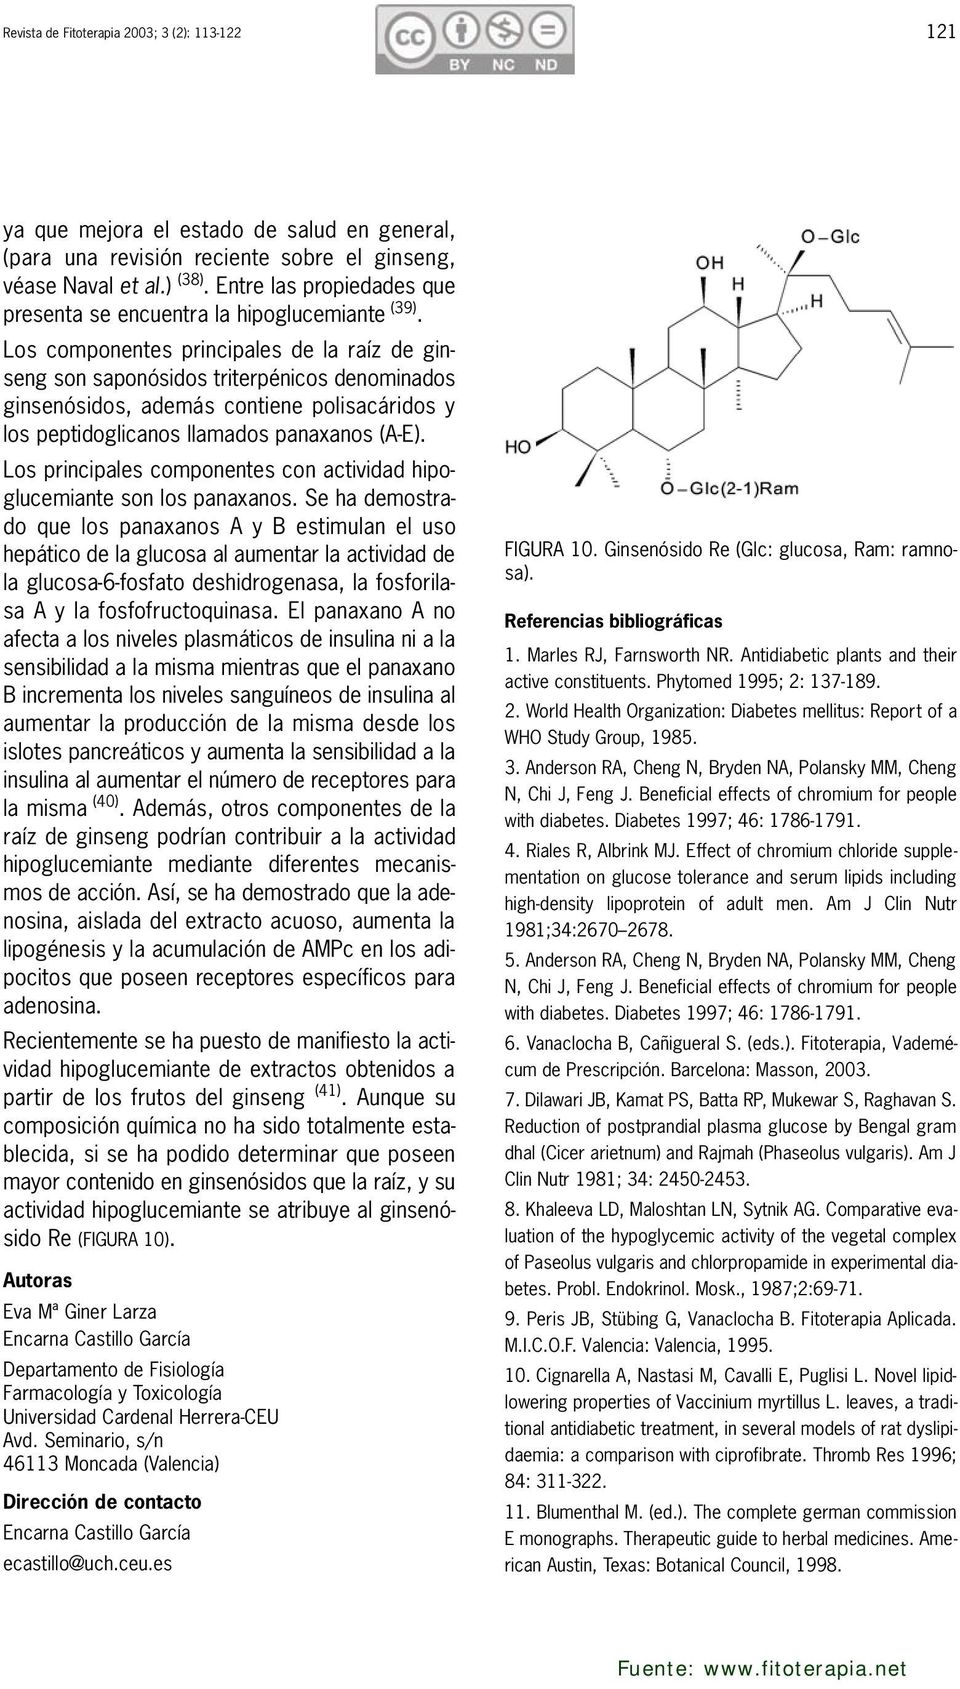 Los componentes principales de la raíz de ginseng son saponósidos triterpénicos denominados ginsenósidos, además contiene polisacáridos y los peptidoglicanos llamados panaxanos (A-E).